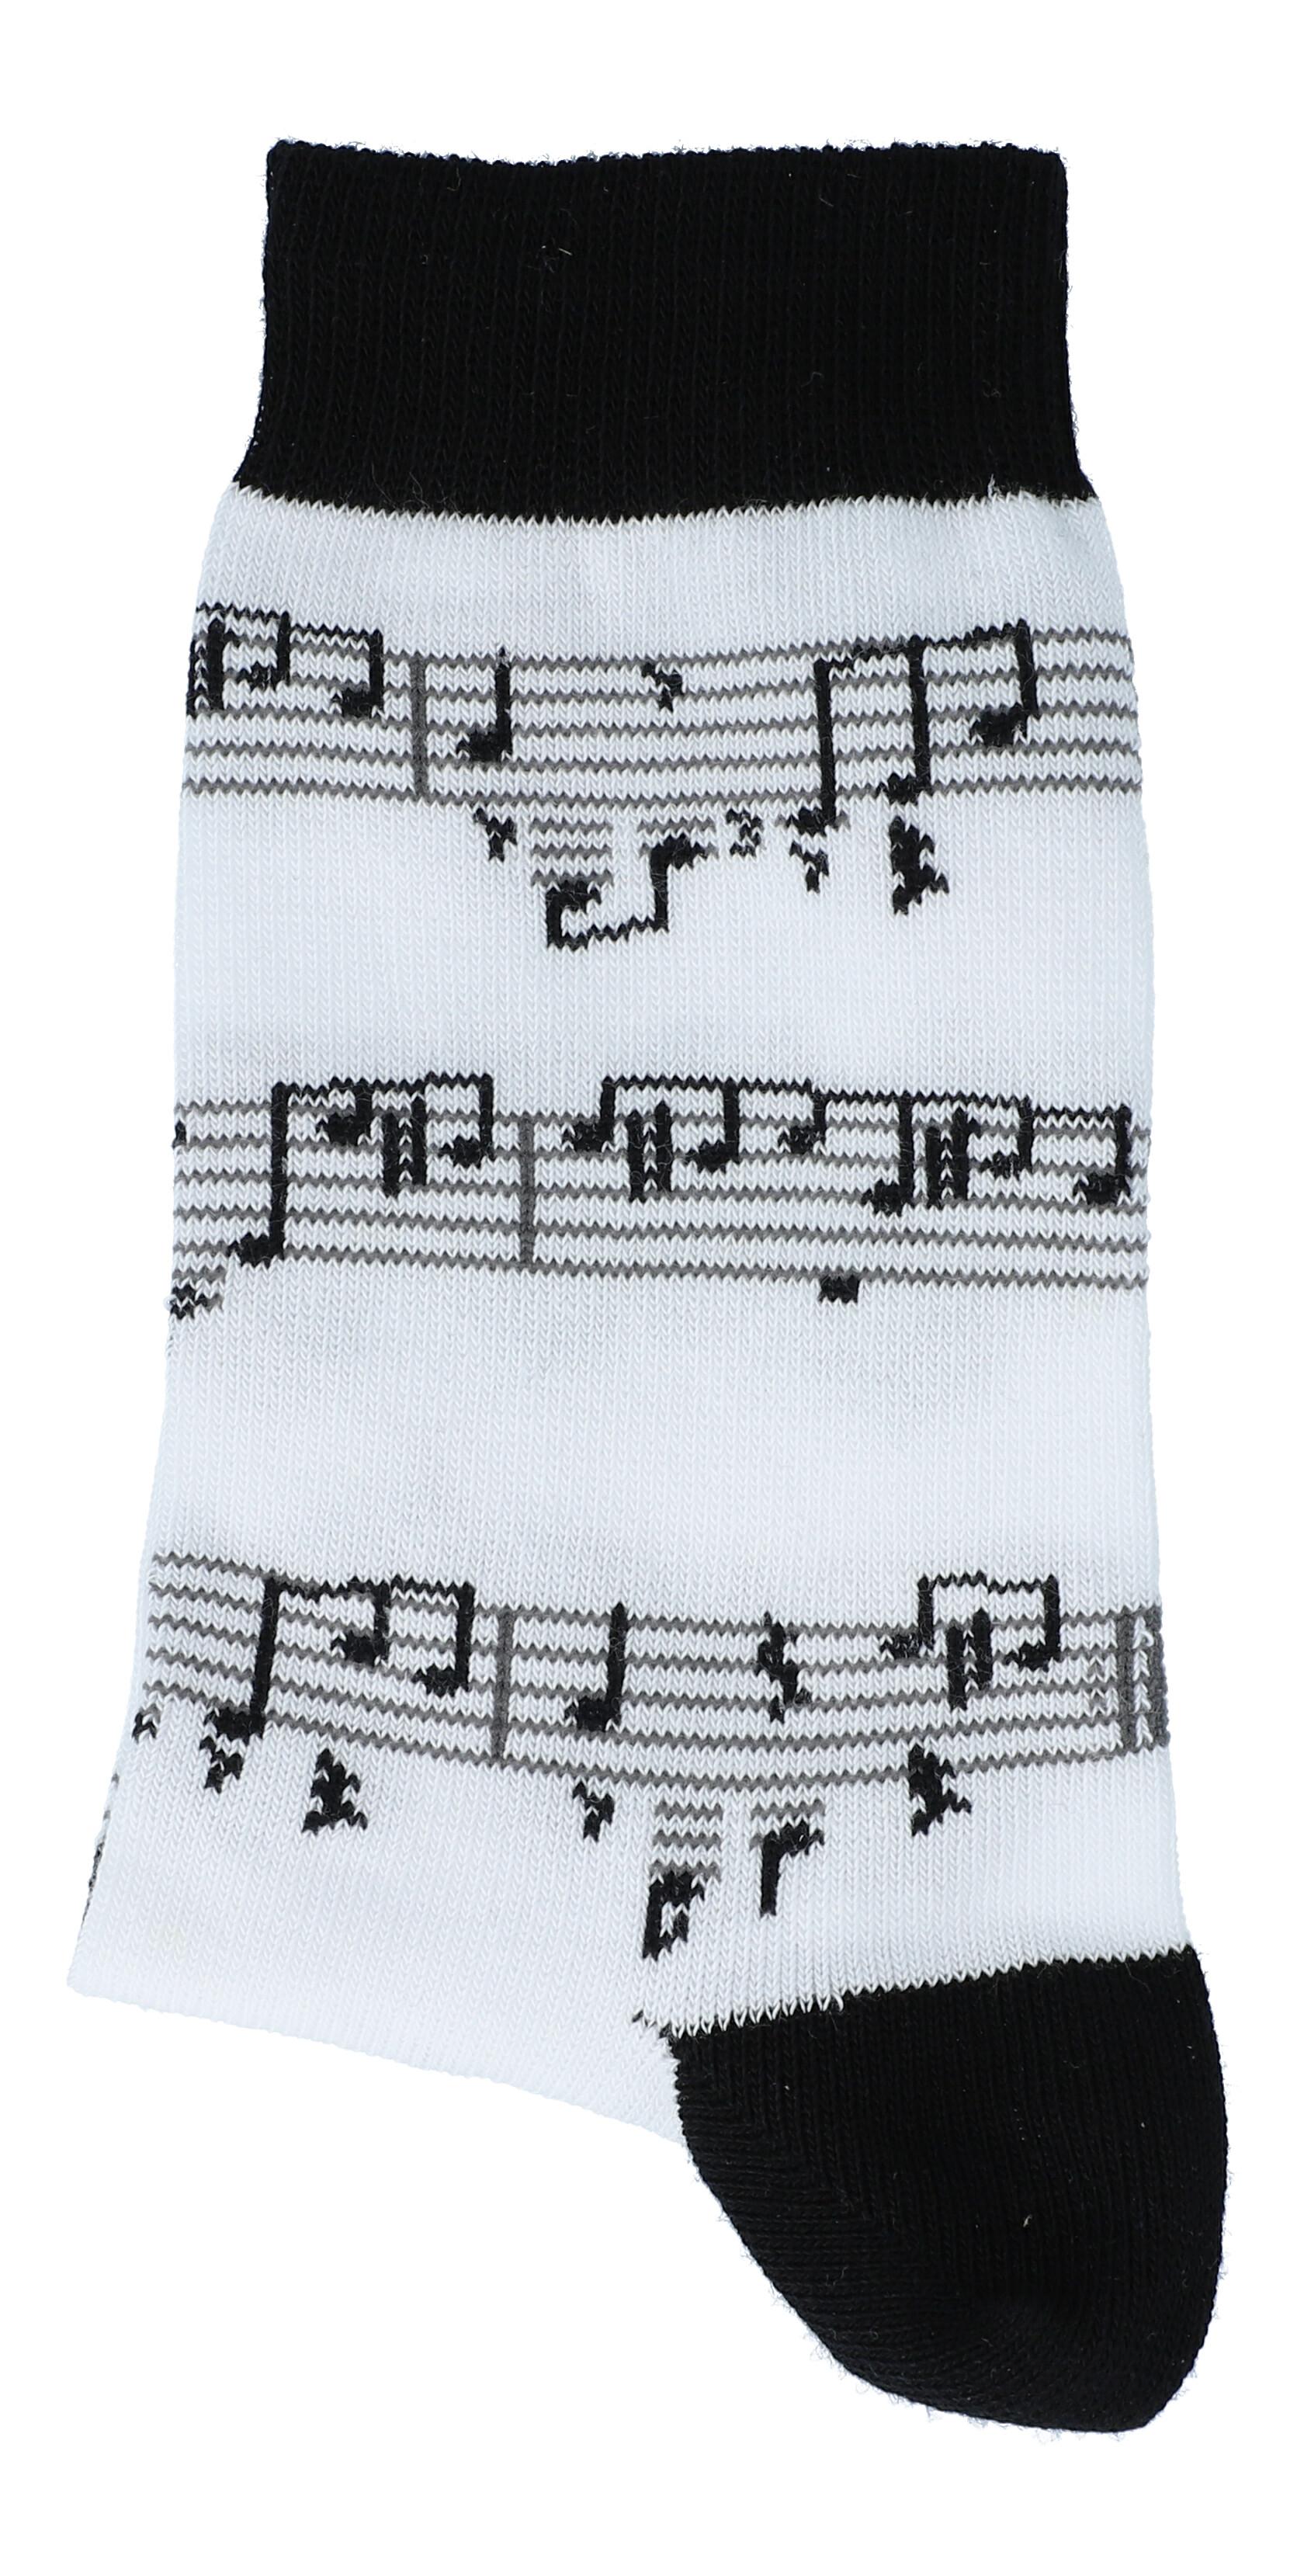 Weiße Socken mit schwarzer Notenlinie, Musik-Socken, 39-42